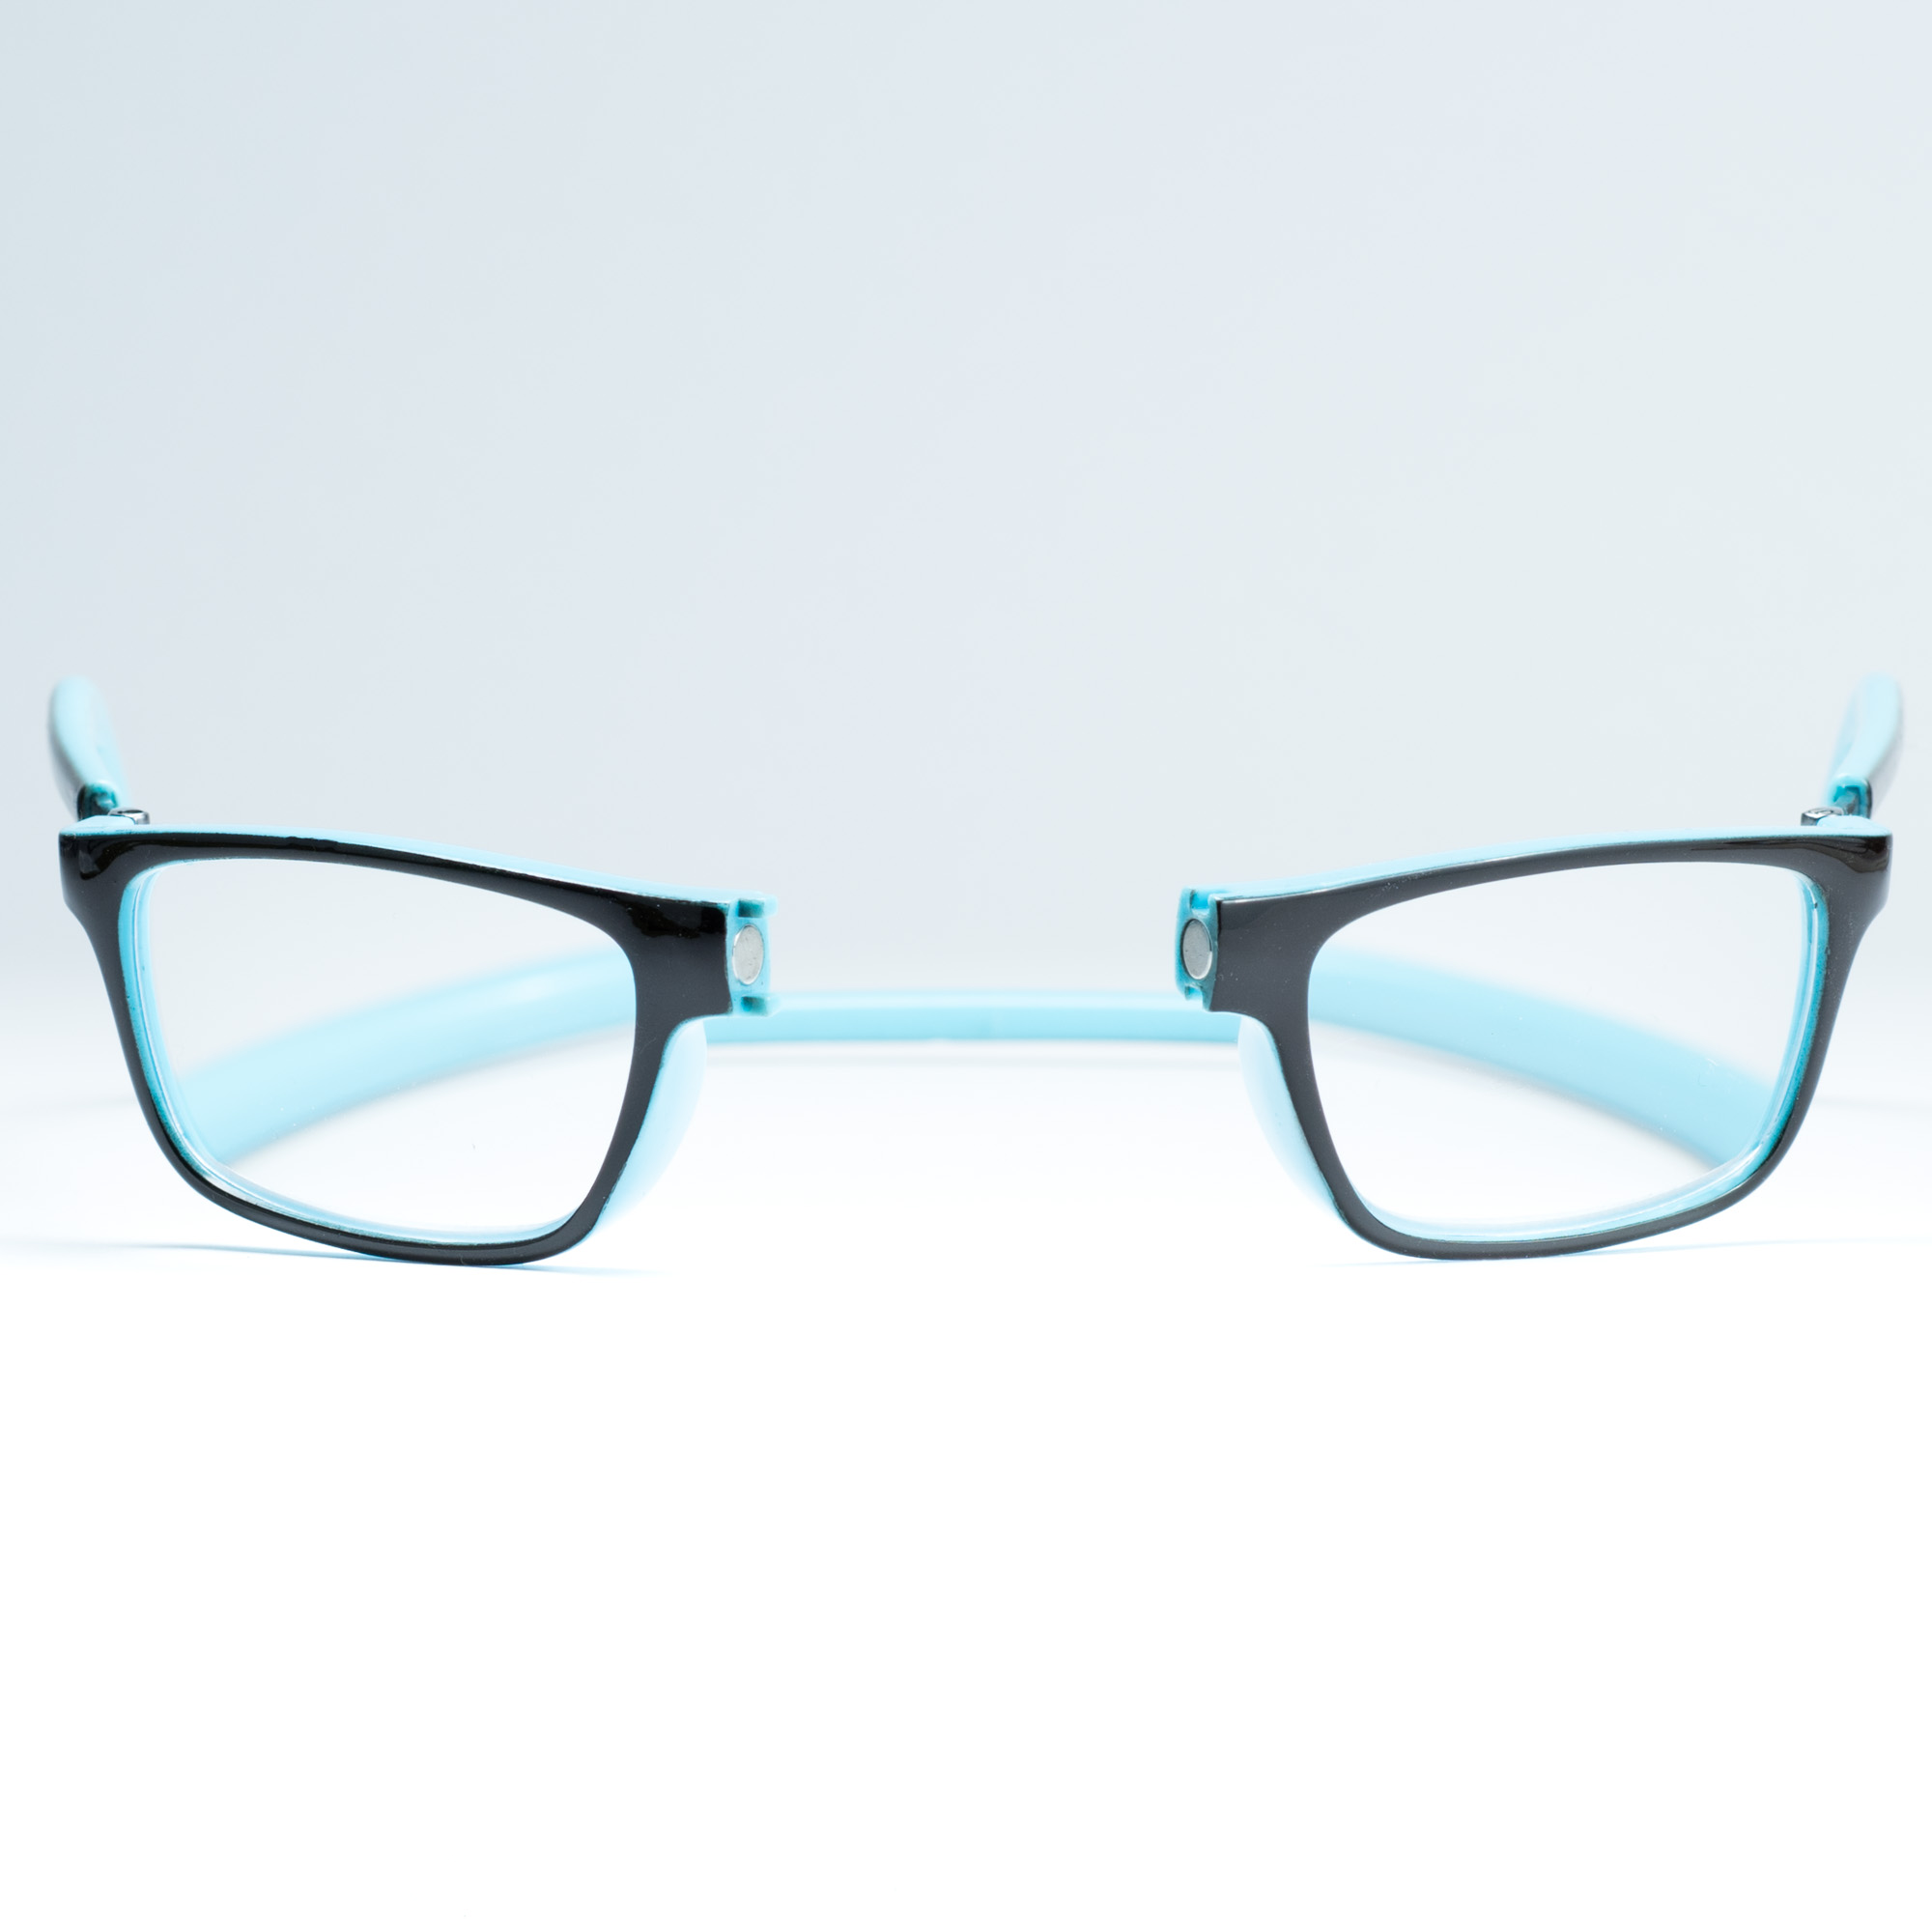 Easy Reader magneetleesbril leesbril met magneetsluiting model sam bruin/blauw